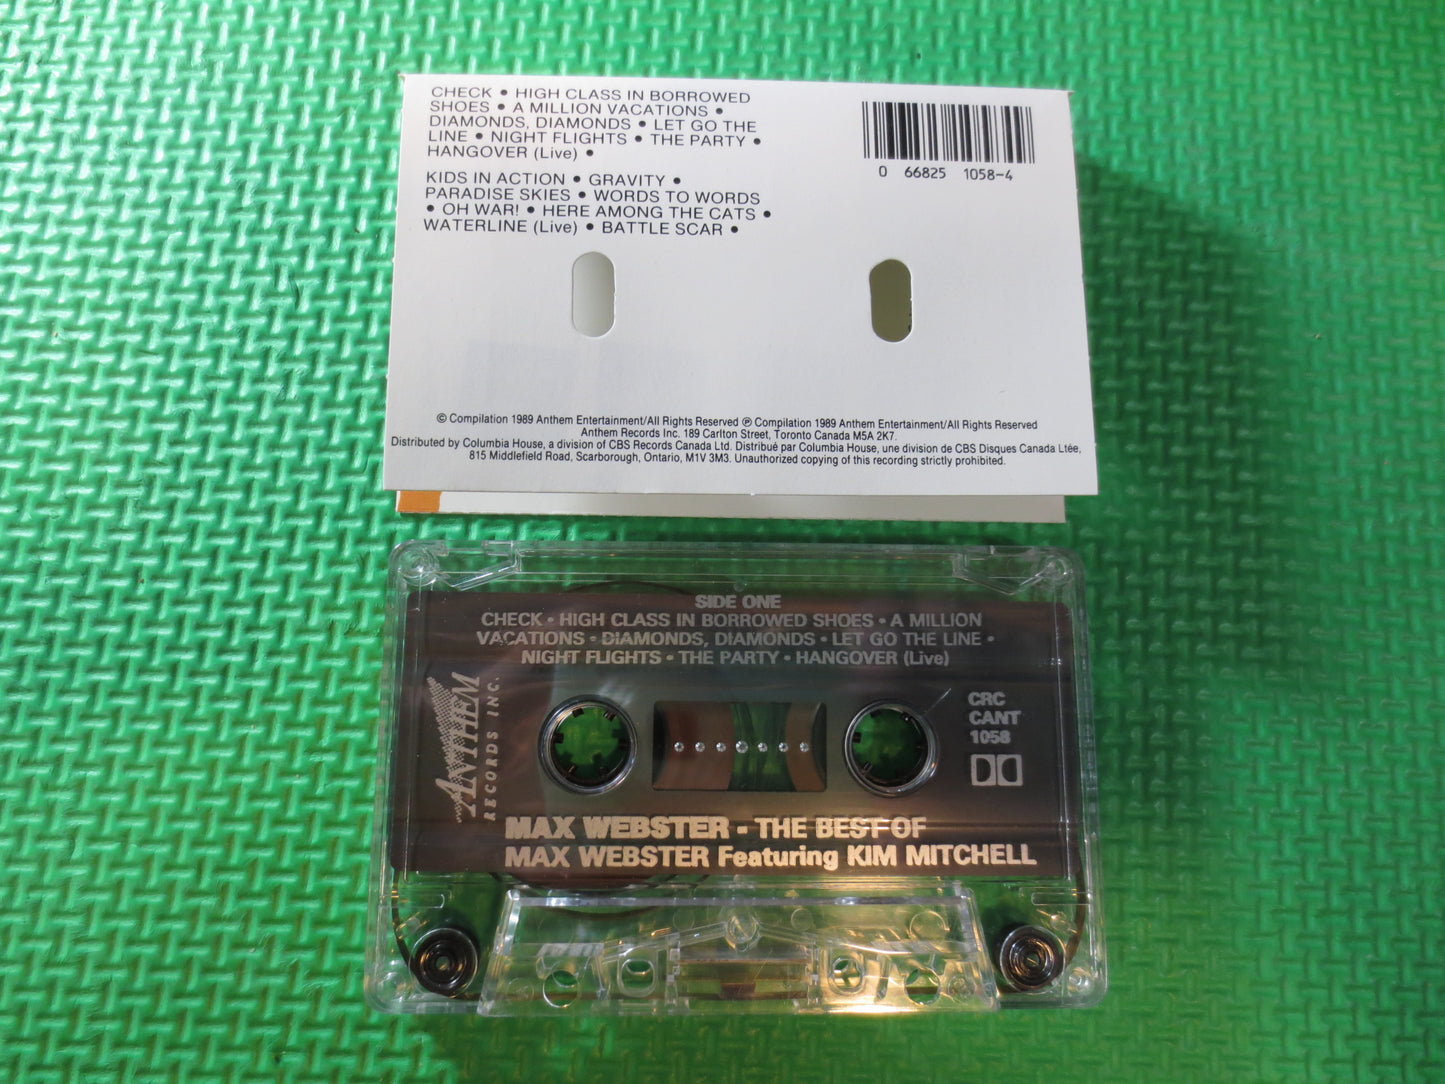 MAX WEBSTER Tape, BEST of Tape, Max Webster Album, Max Webster Music, Max Webster Lp, Tape Cassette, Cassette, 1988 Cassette